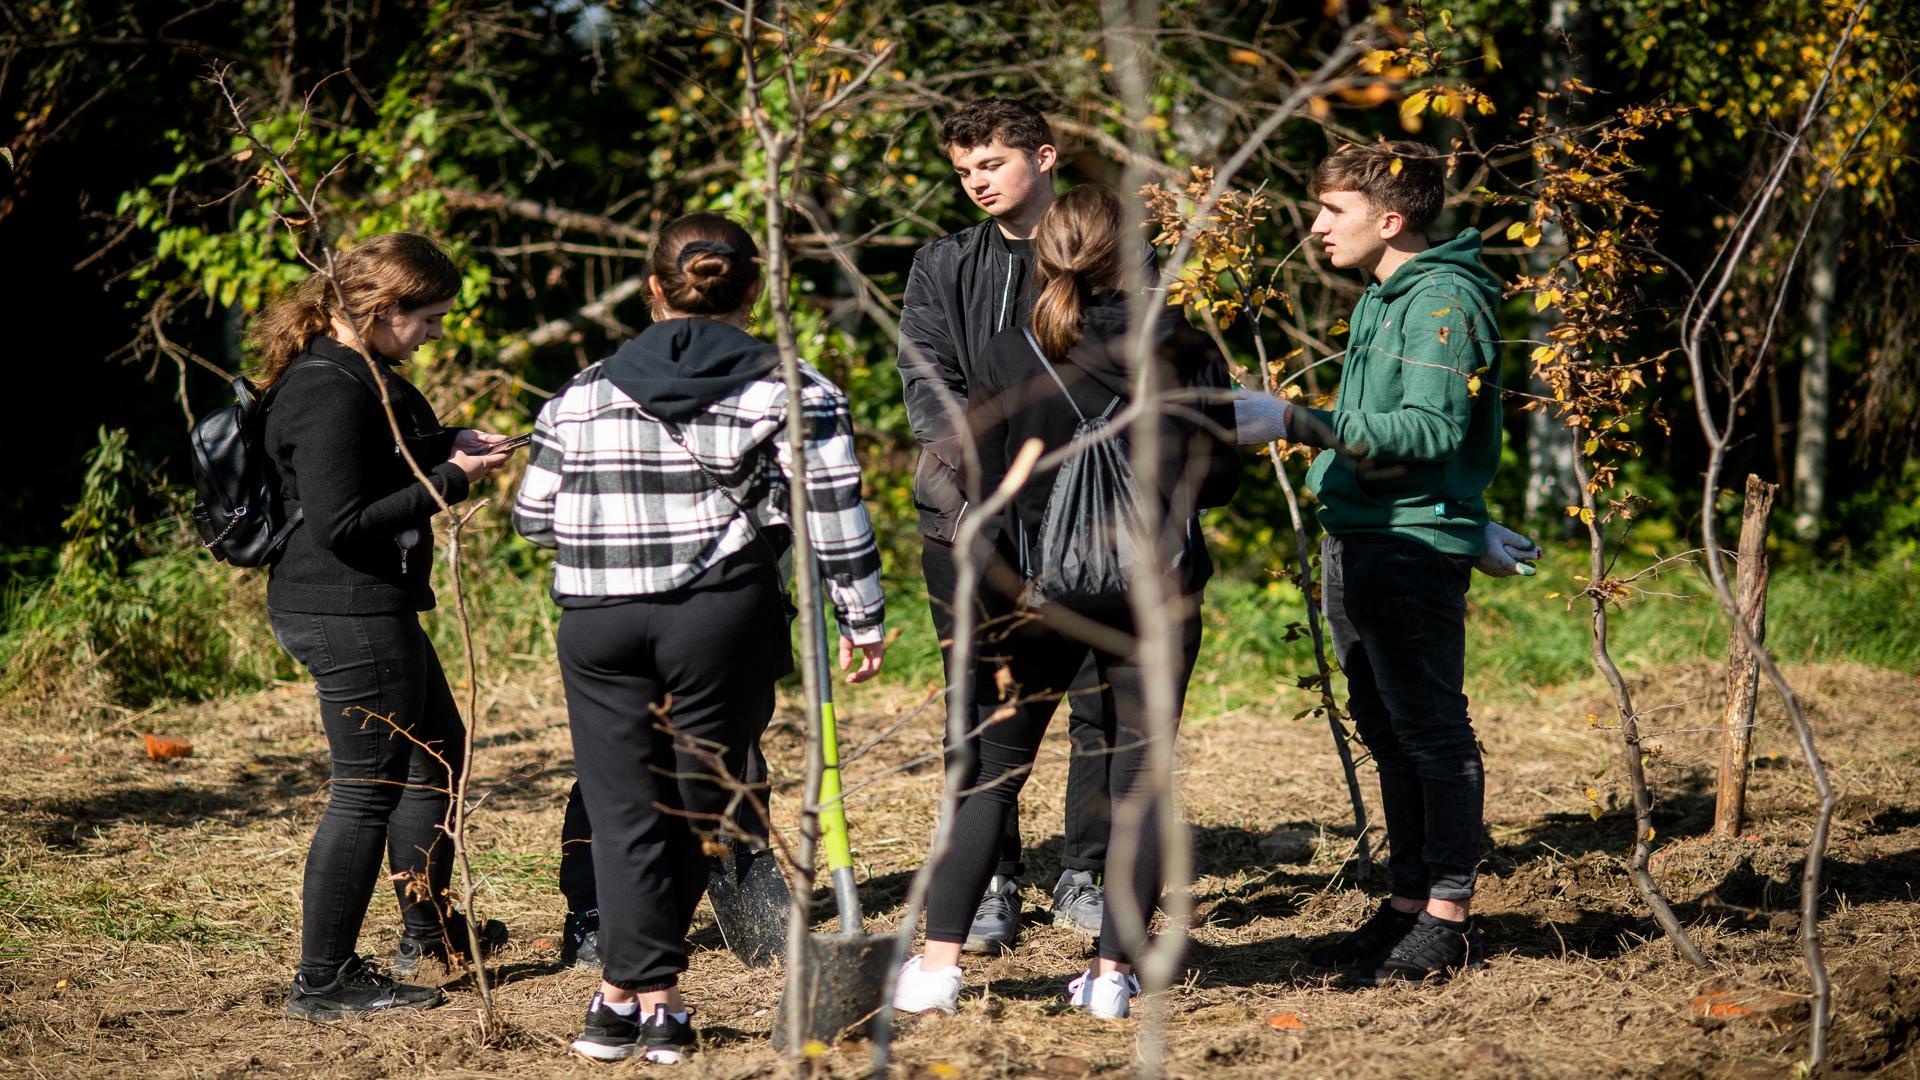 Trzy studentki oraz dwóch studentów stoją obok siebie trzymając łopaty i rozmawiając ze sobą podczas sadzenia sadzonek. W oddali obok działki na której są sadzone drzewa widać skraj lasu.